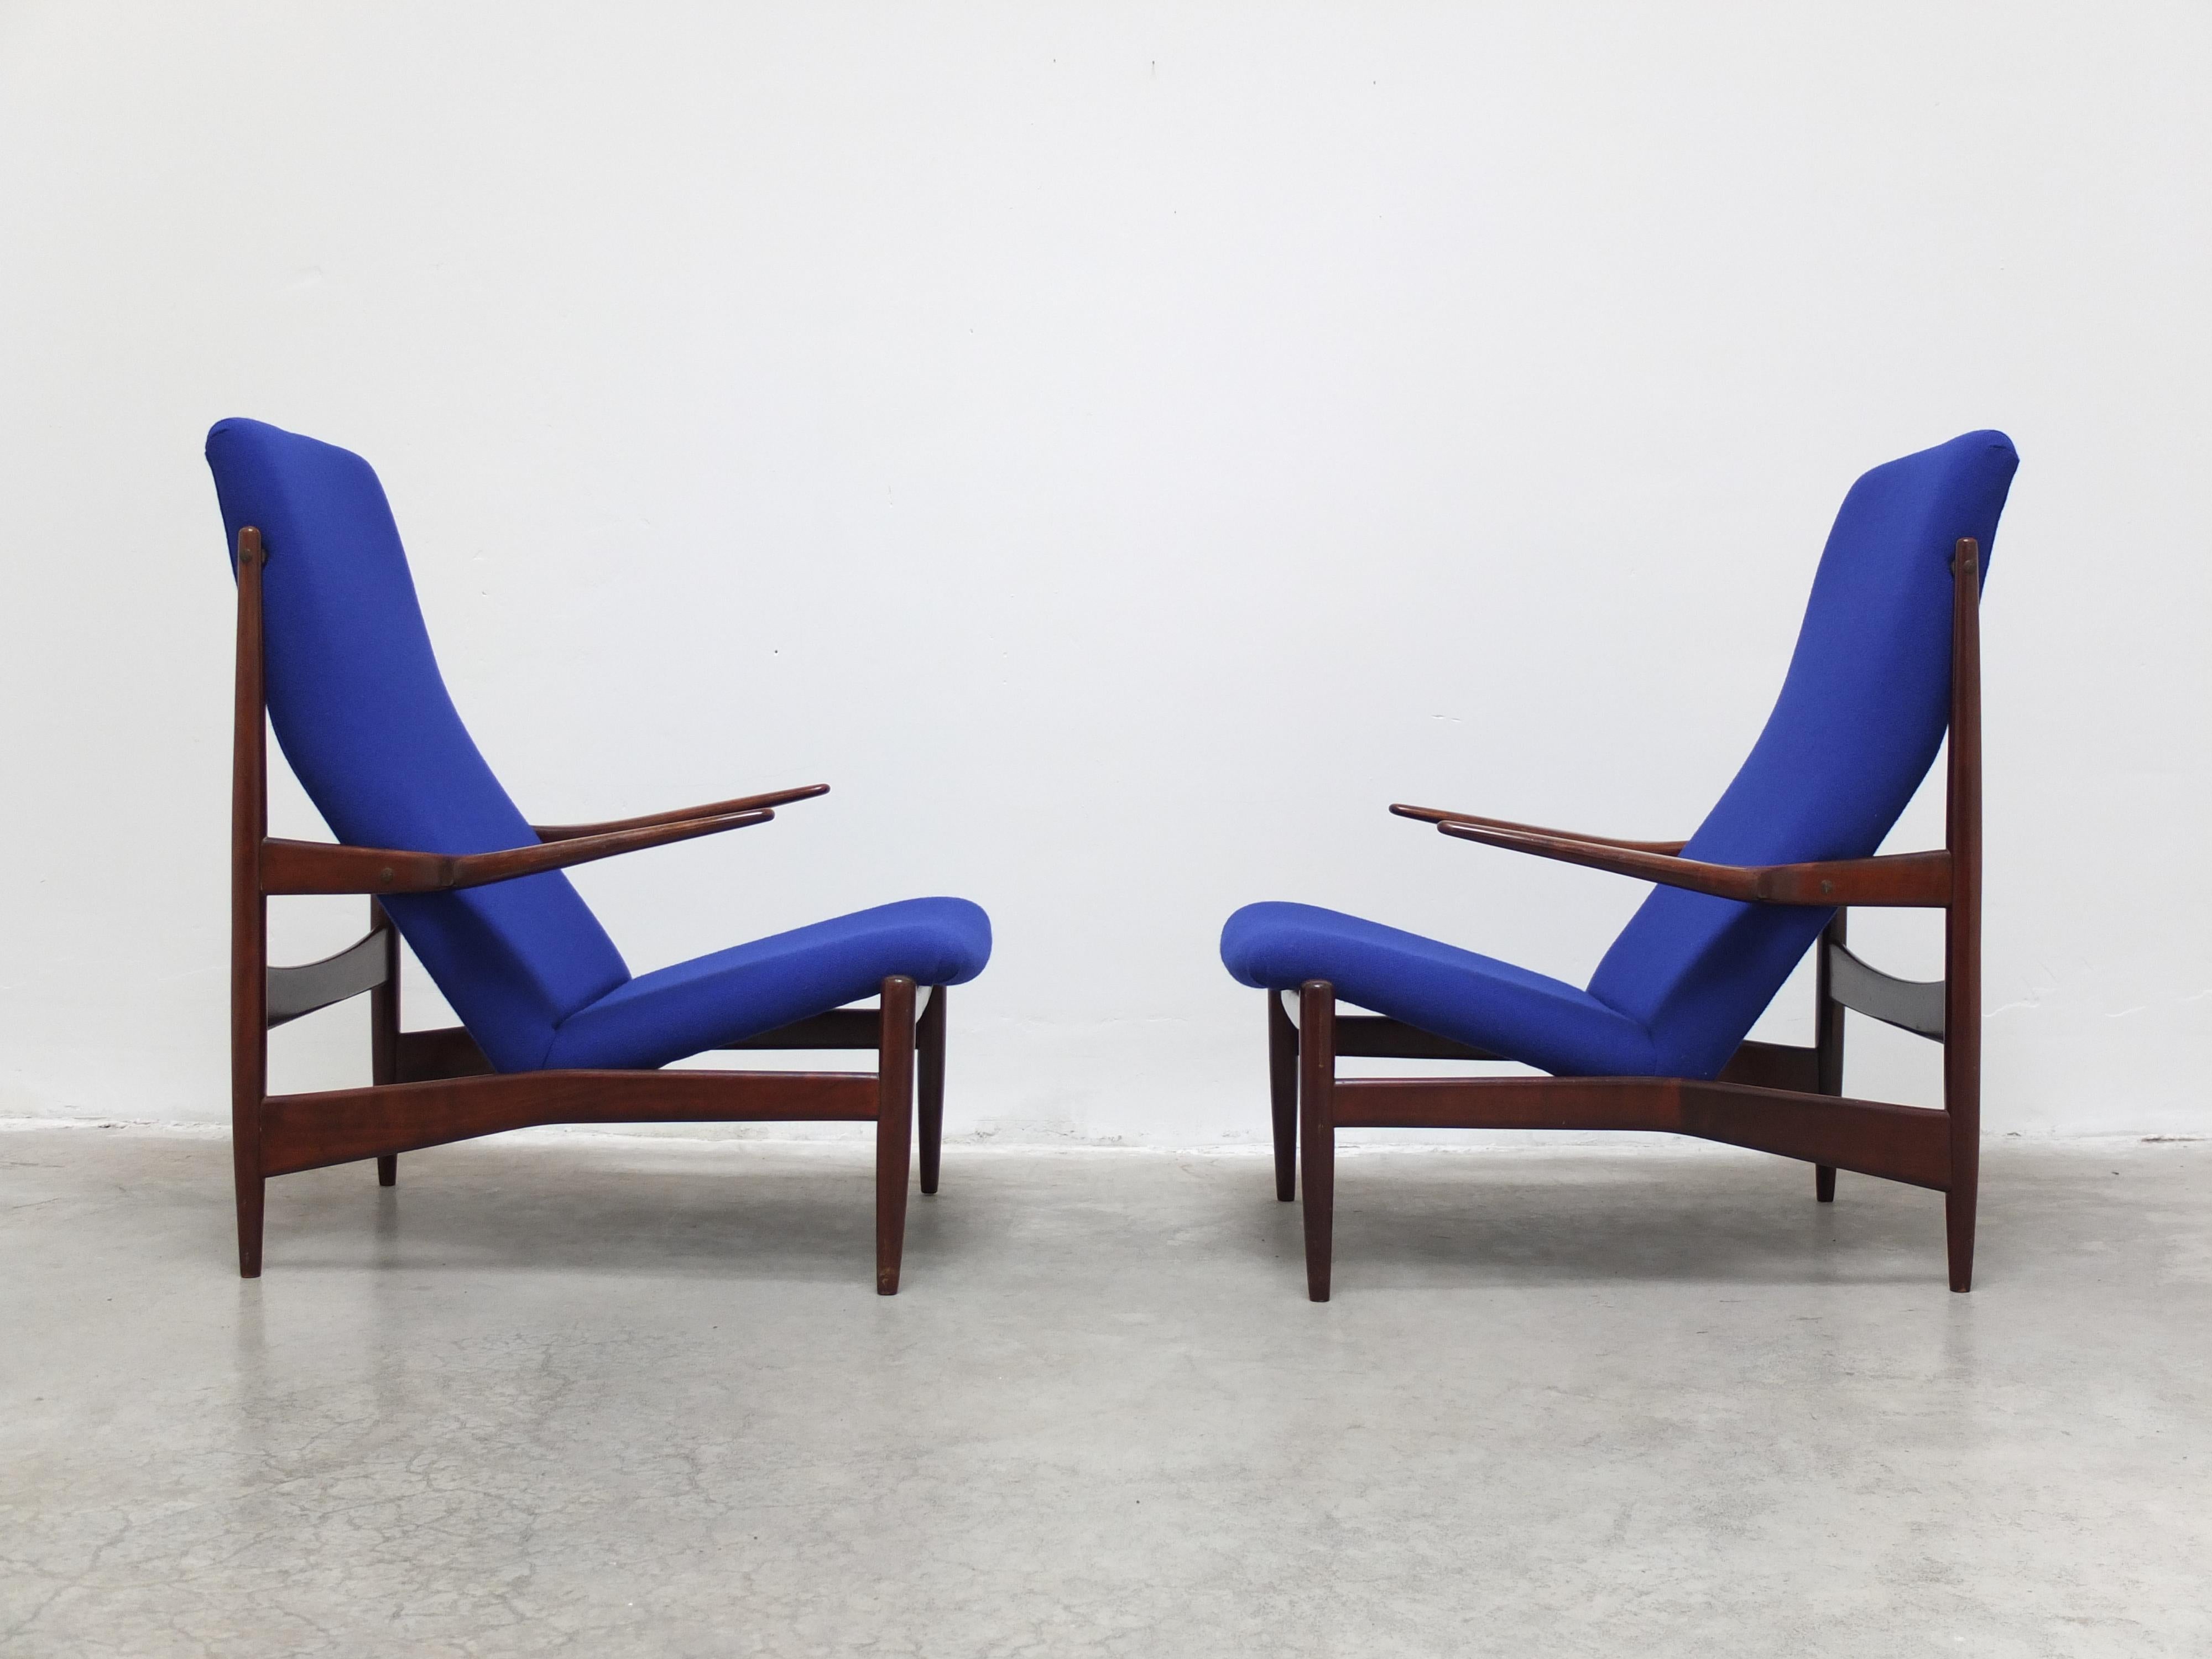 Exceptionnelle et magnifique paire de chaises longues conçues par Alfred Hendrickx pour l'Expo de 1958 à Bruxelles. Ils présentent un élégant cadre en noyer avec des accoudoirs flottants et des détails en laiton. Produit vers 1958 par Belform.